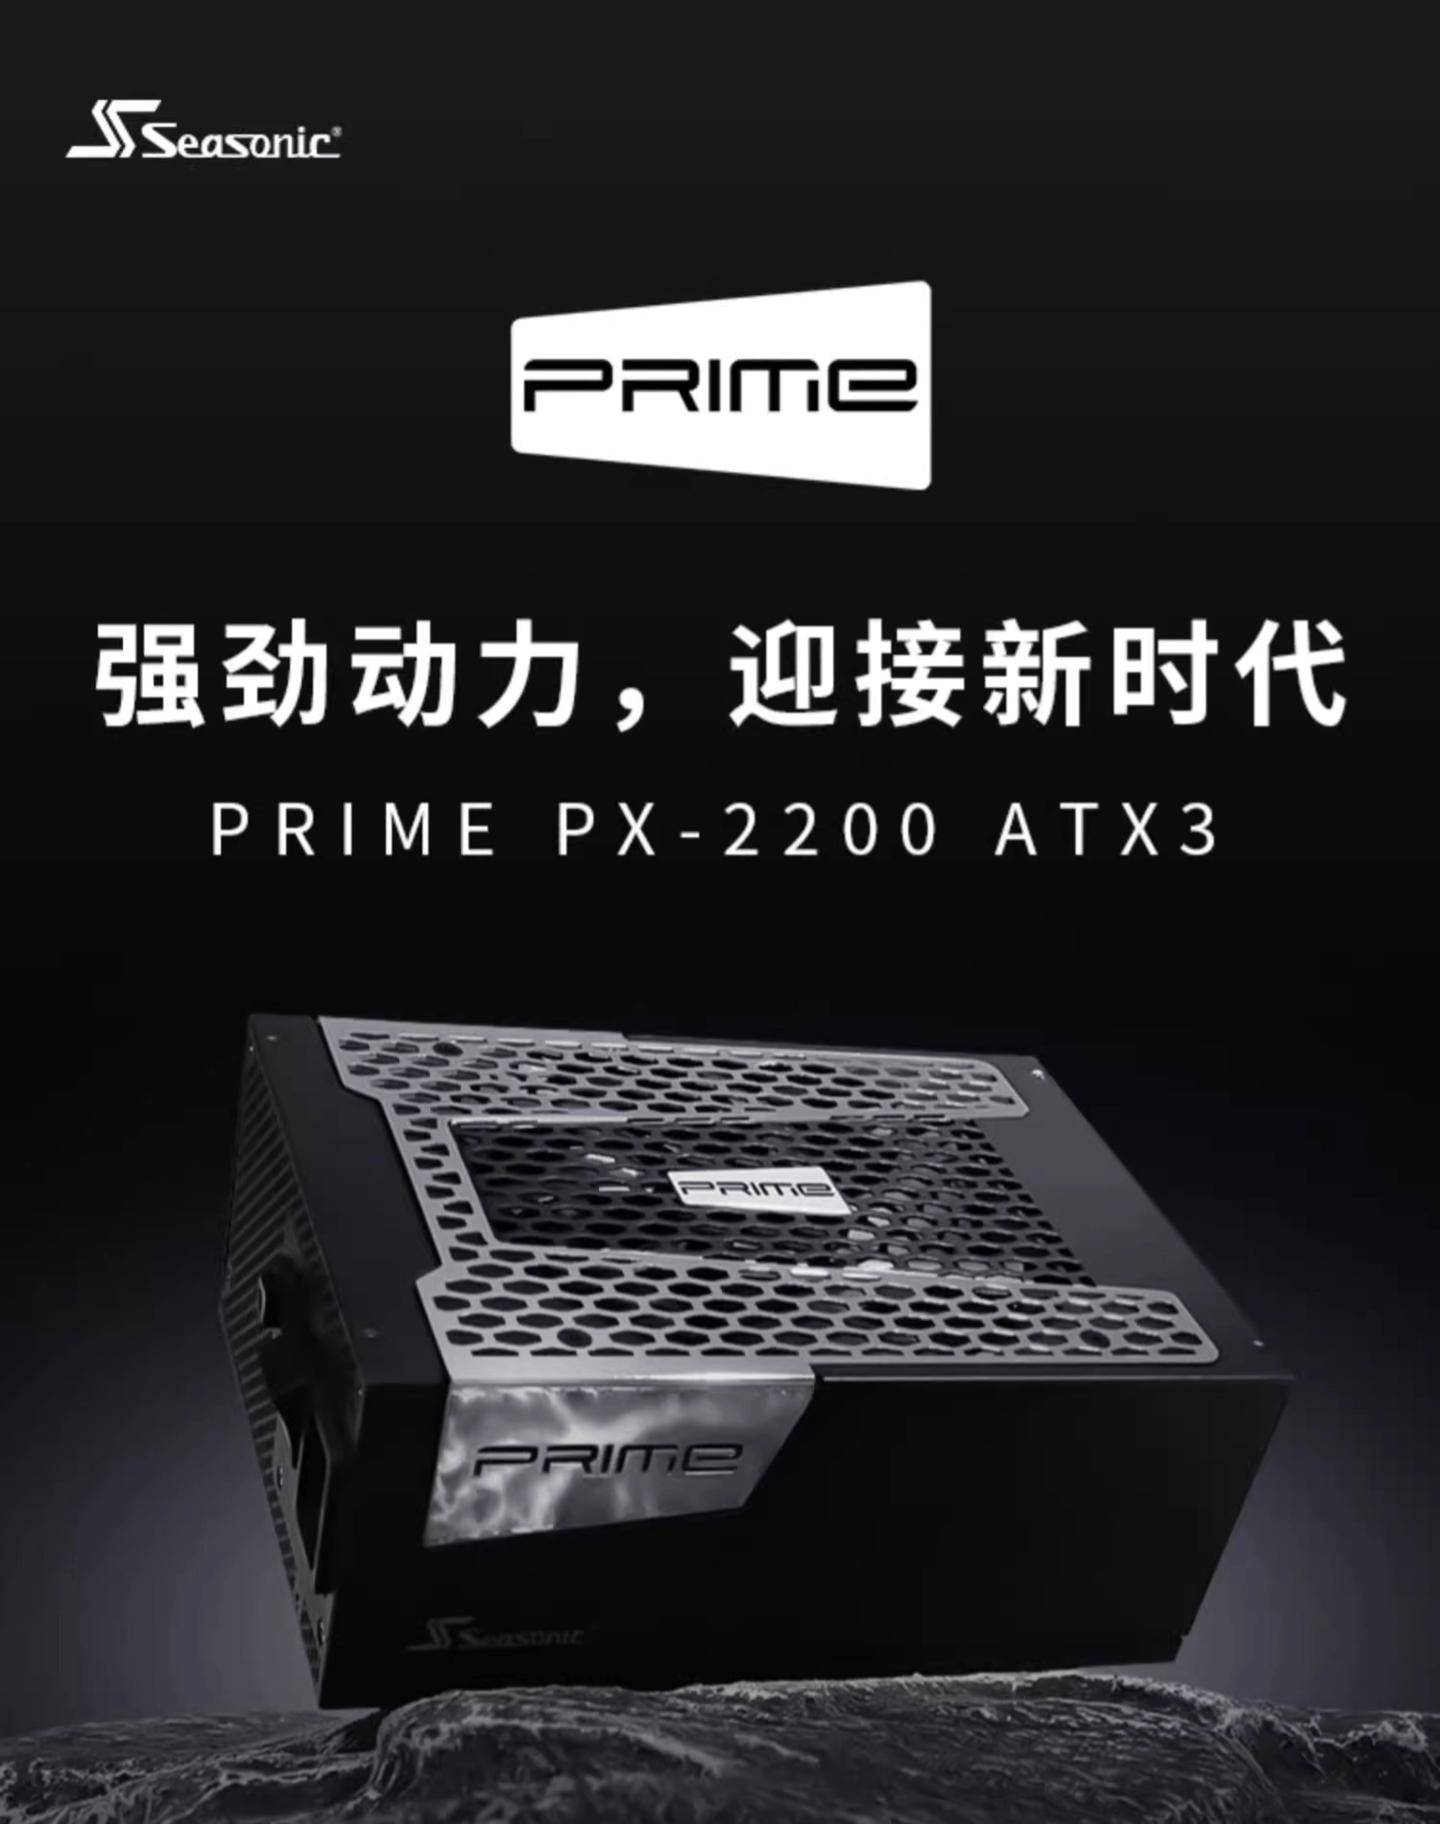 海韵PRIME PX-2200 ATX3电源开售 最高转换效率超过94%